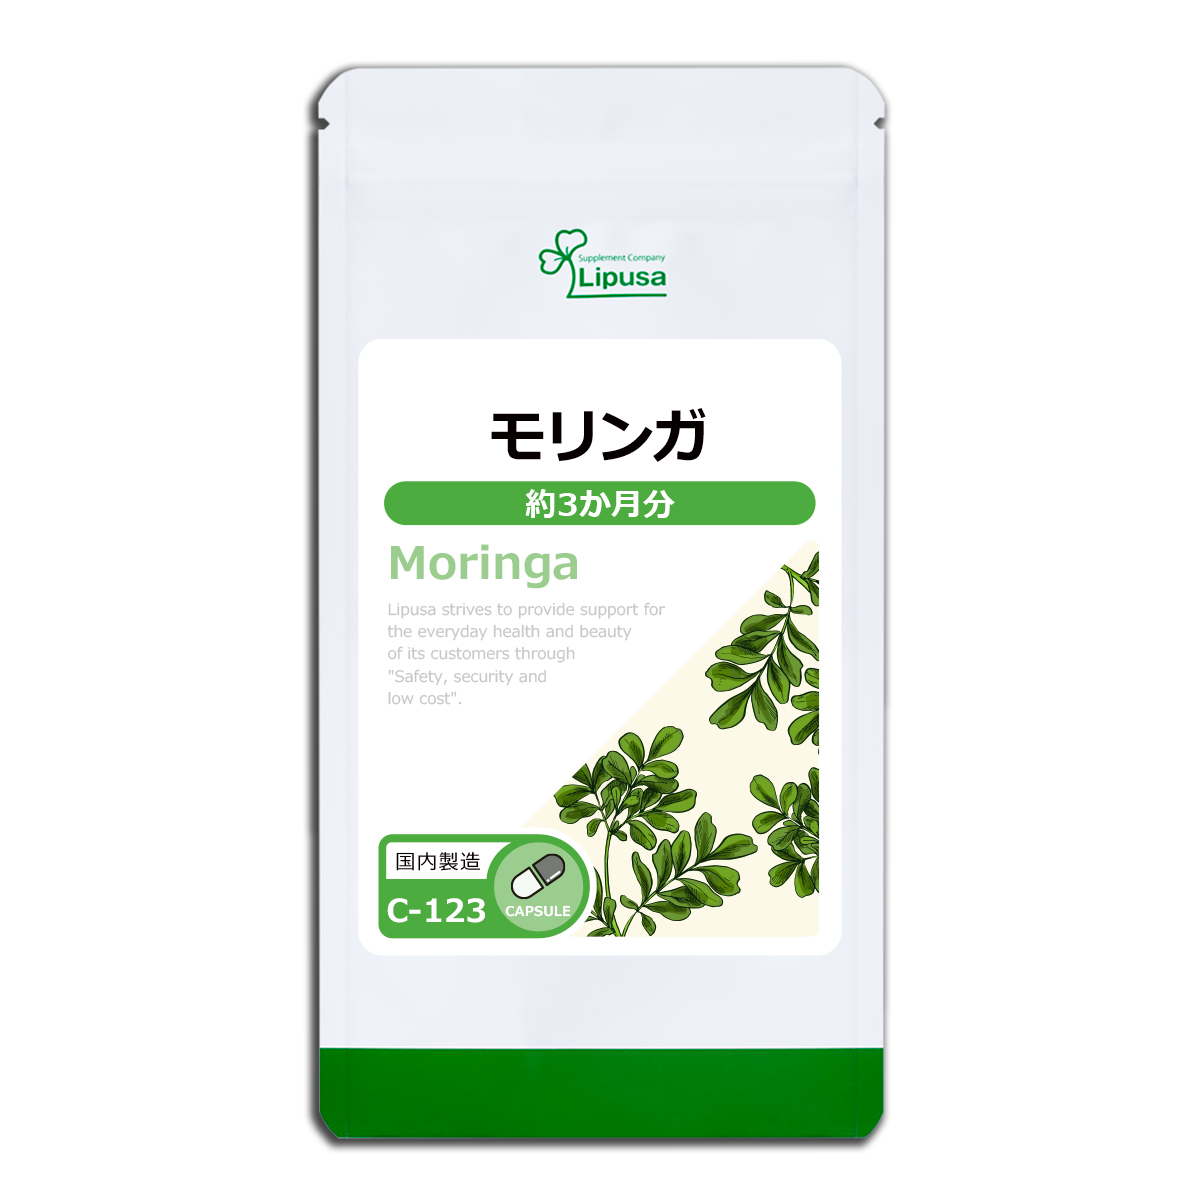 全日本送料無料 モリンガ 約3か月分 C-123 サプリメント 健康 美容 ビタミンC